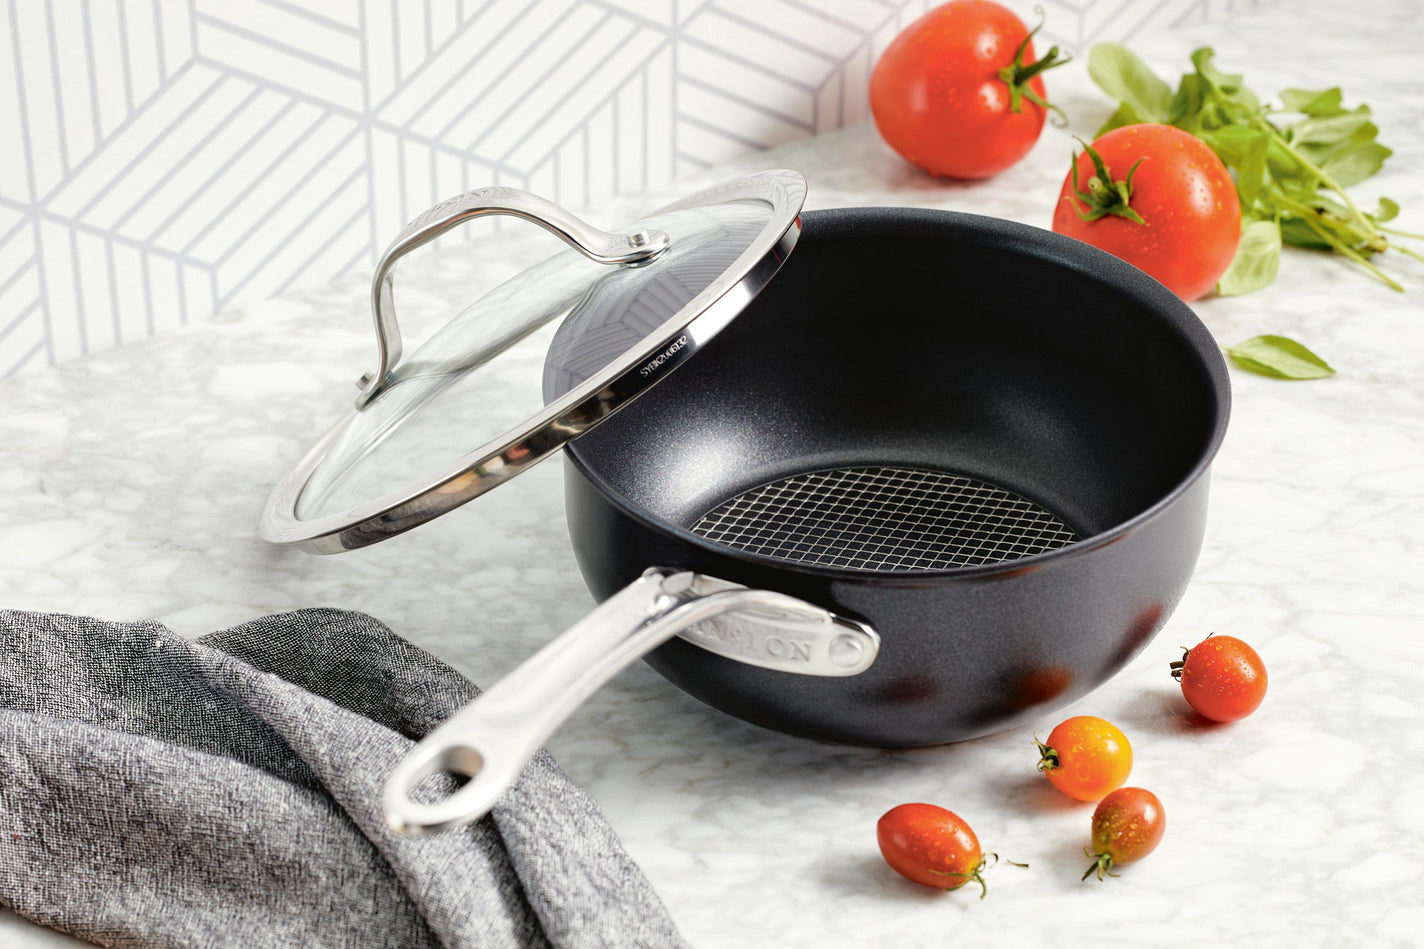  Anolon X SearTech Aluminum Nonstick Cookware Frying Pan Set,  2-Piece, Super Dark Gray: Home & Kitchen